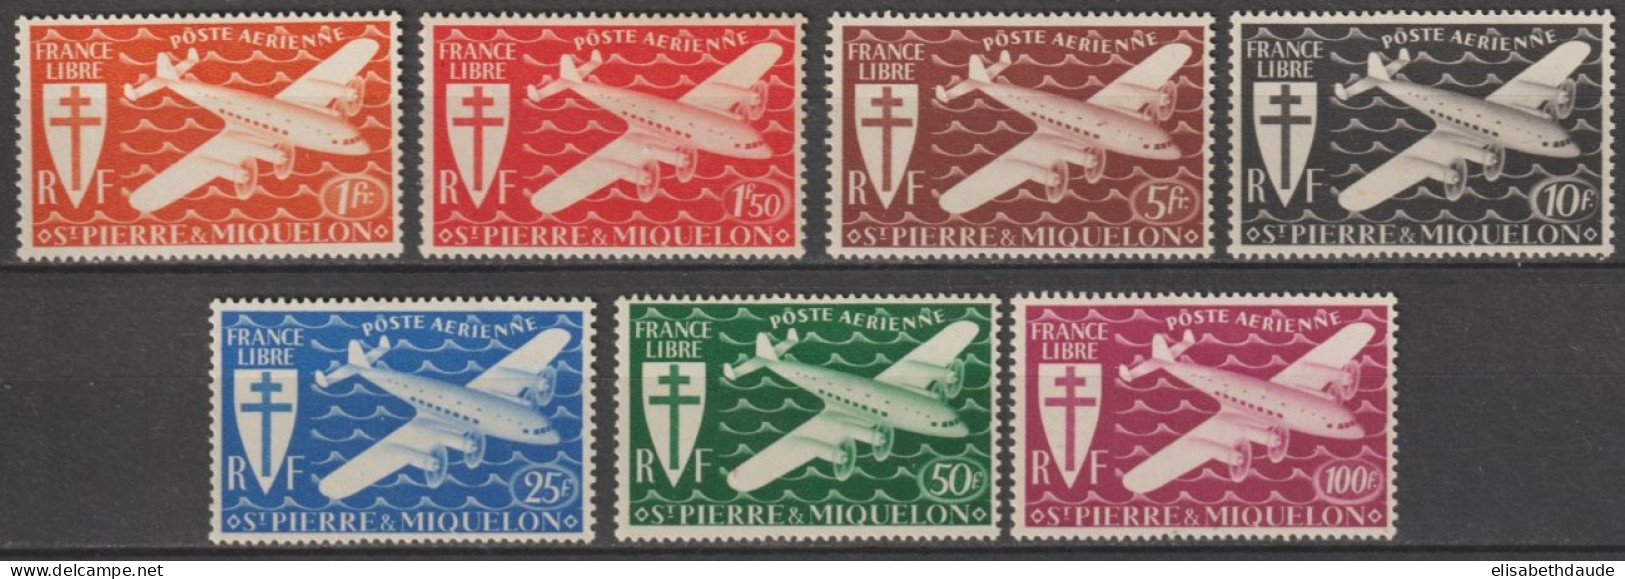 SPM - 1942 - LIVRAISON GRATUITE A PARTIR DE 5 EUR. D'ACHAT - SERIE DE LONDRES - YVERT N°A4/10 * MLH - COTE = 12.5 EUR - Unused Stamps